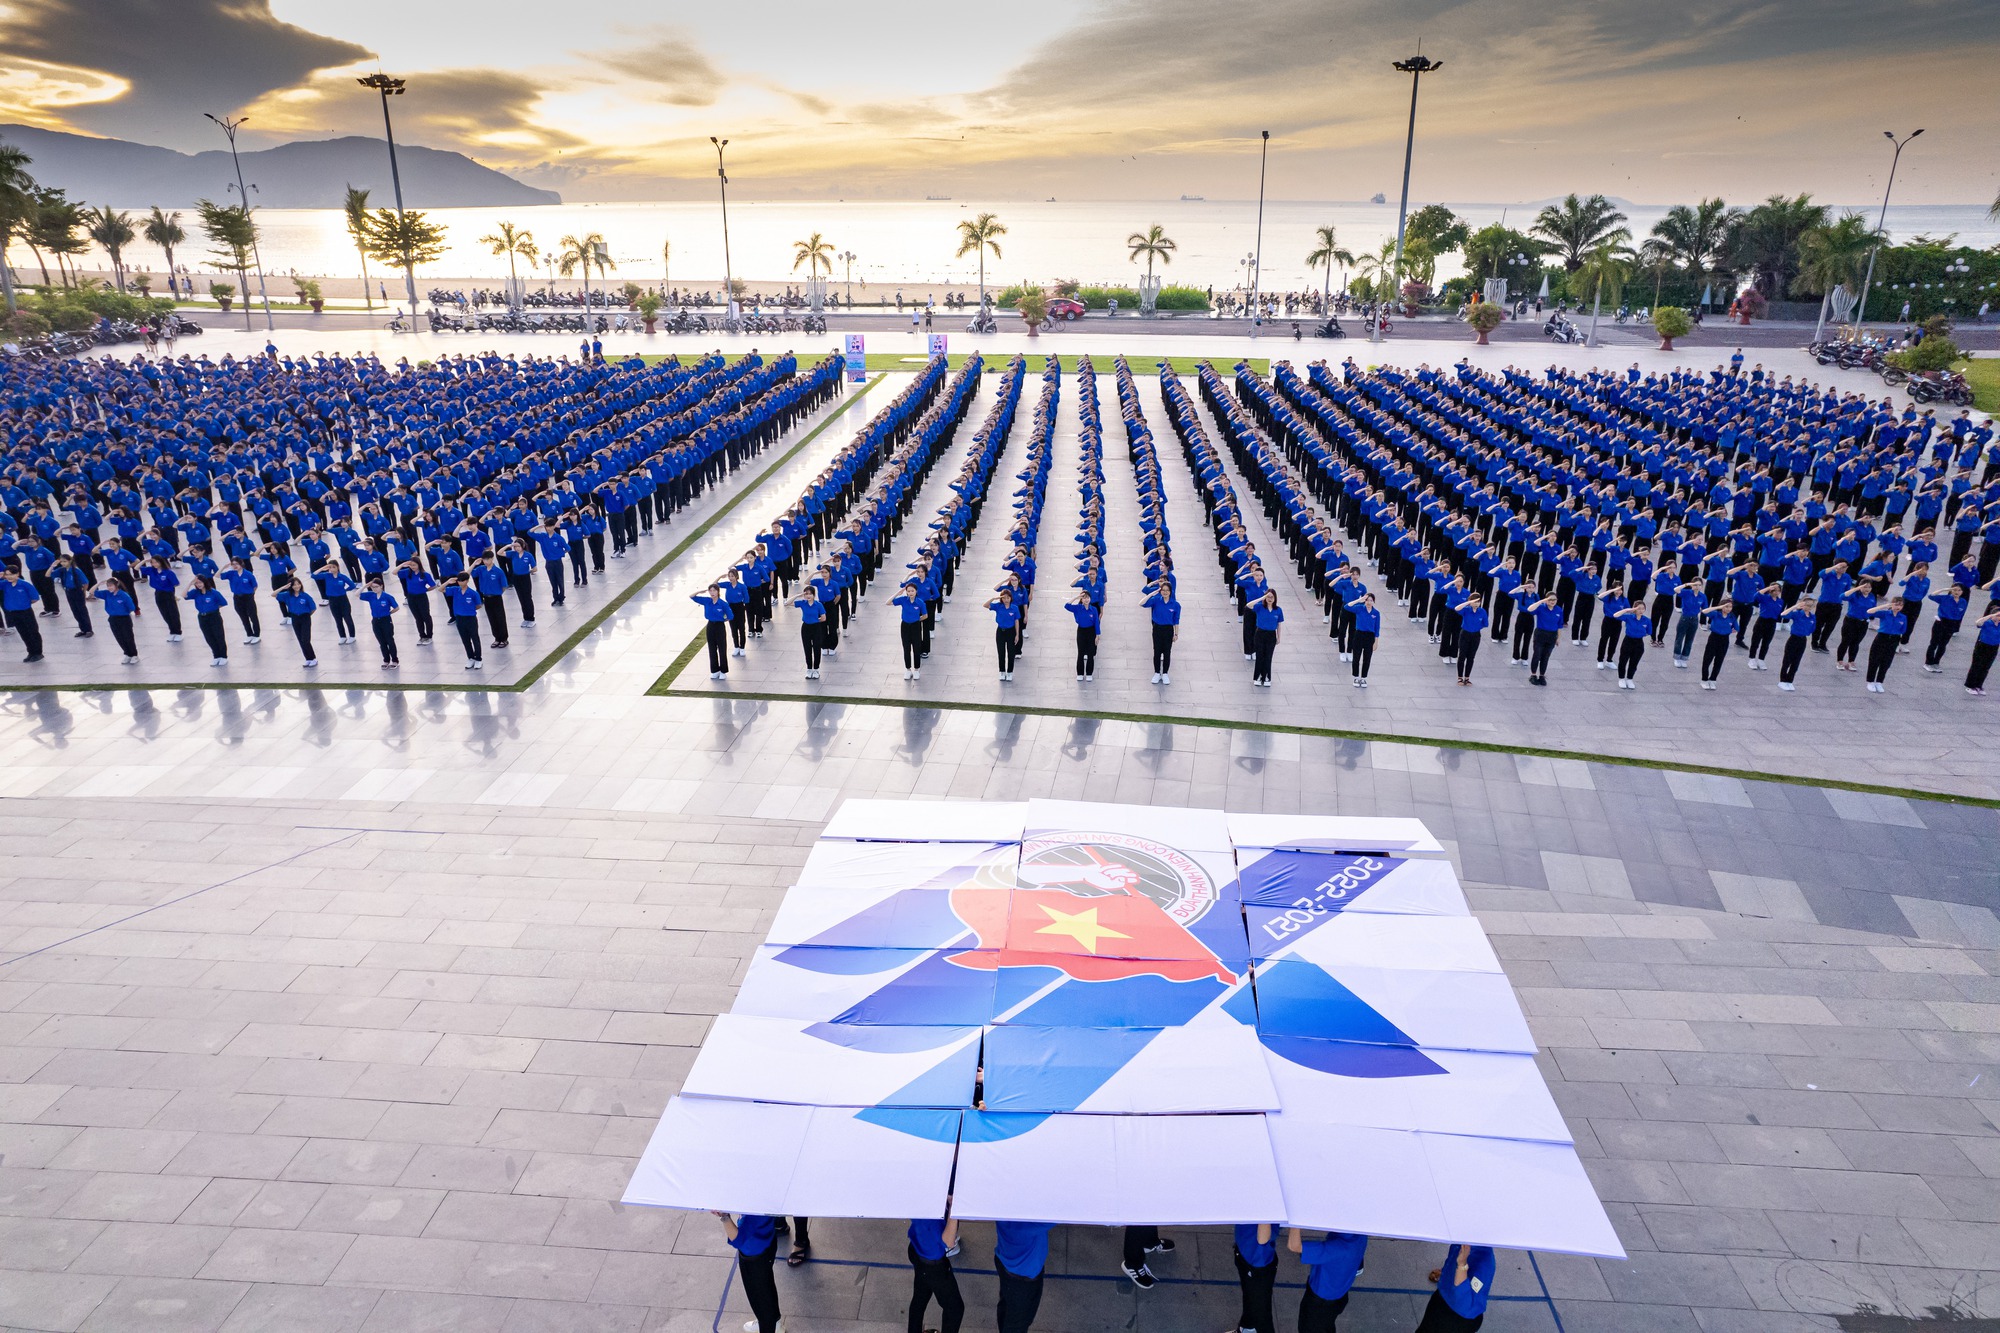 Khoảnh khắc ấn tượng 2.000 người ở Bình Định đồng diễn chào mừng đại hội Đoàn - Ảnh 8.